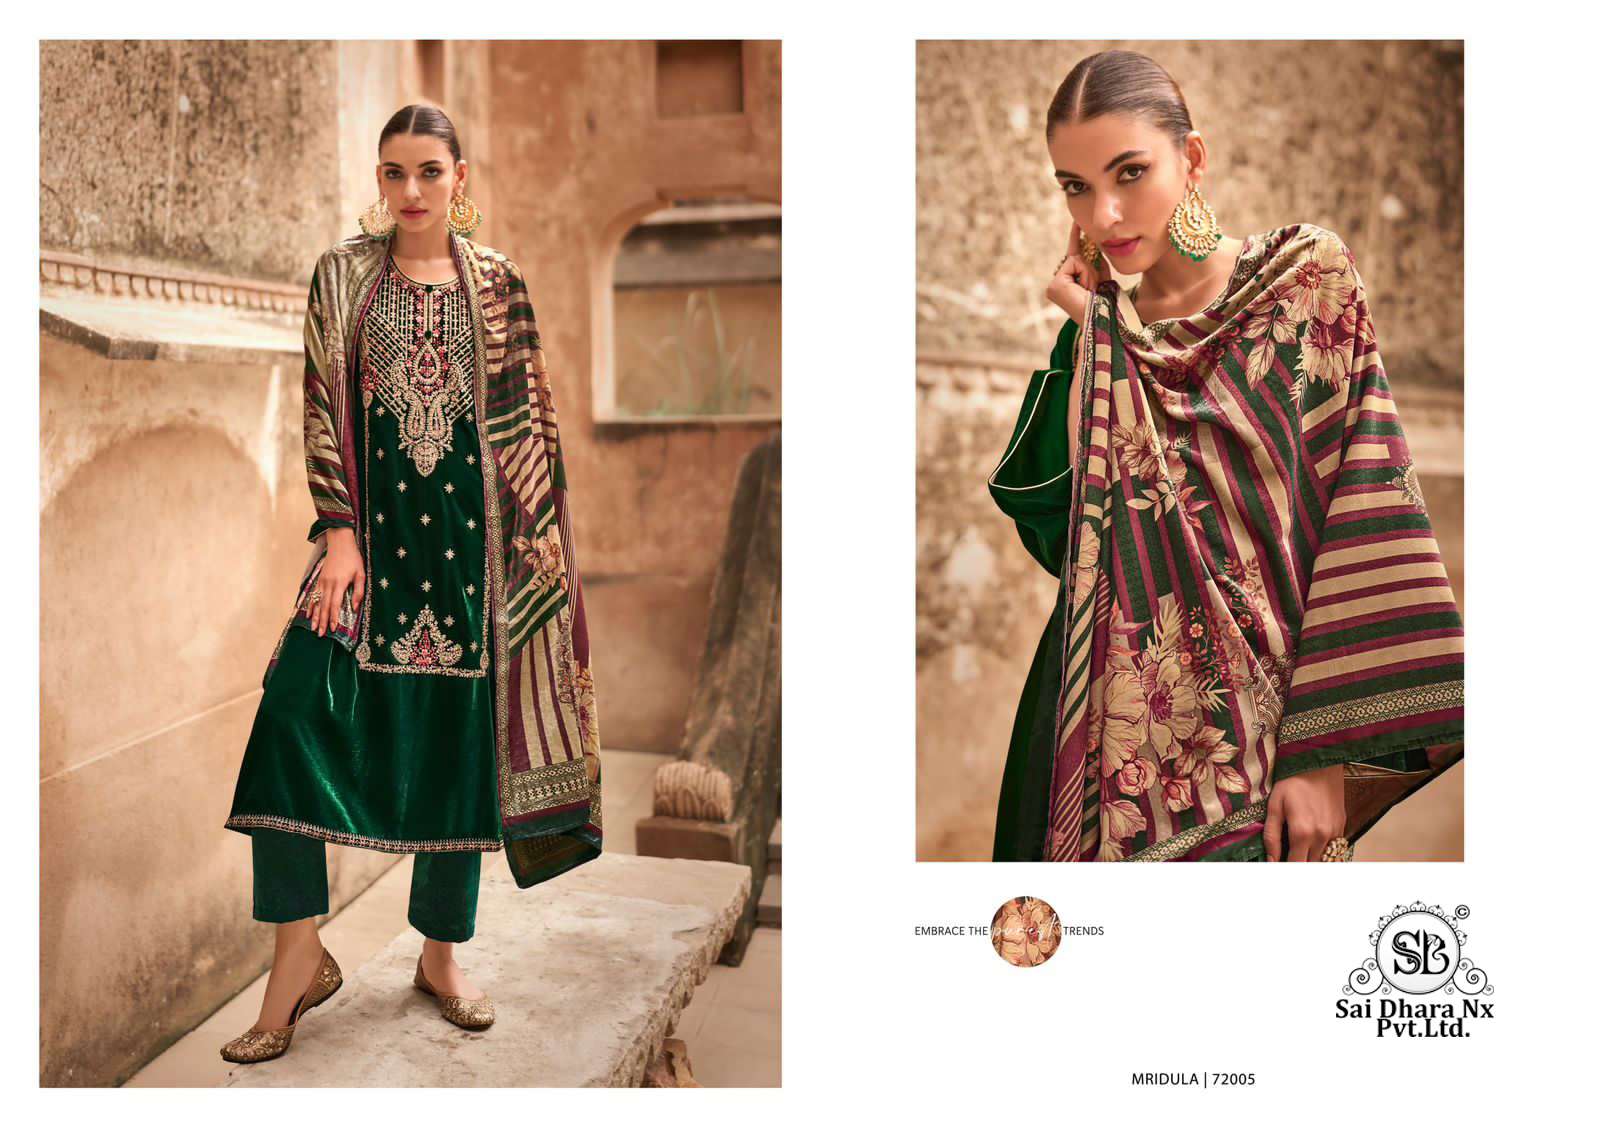 mumtaz arts presents pure velvet dyed designer velvet 3 piece suit wholesale shop in surat - SaiDharaNx